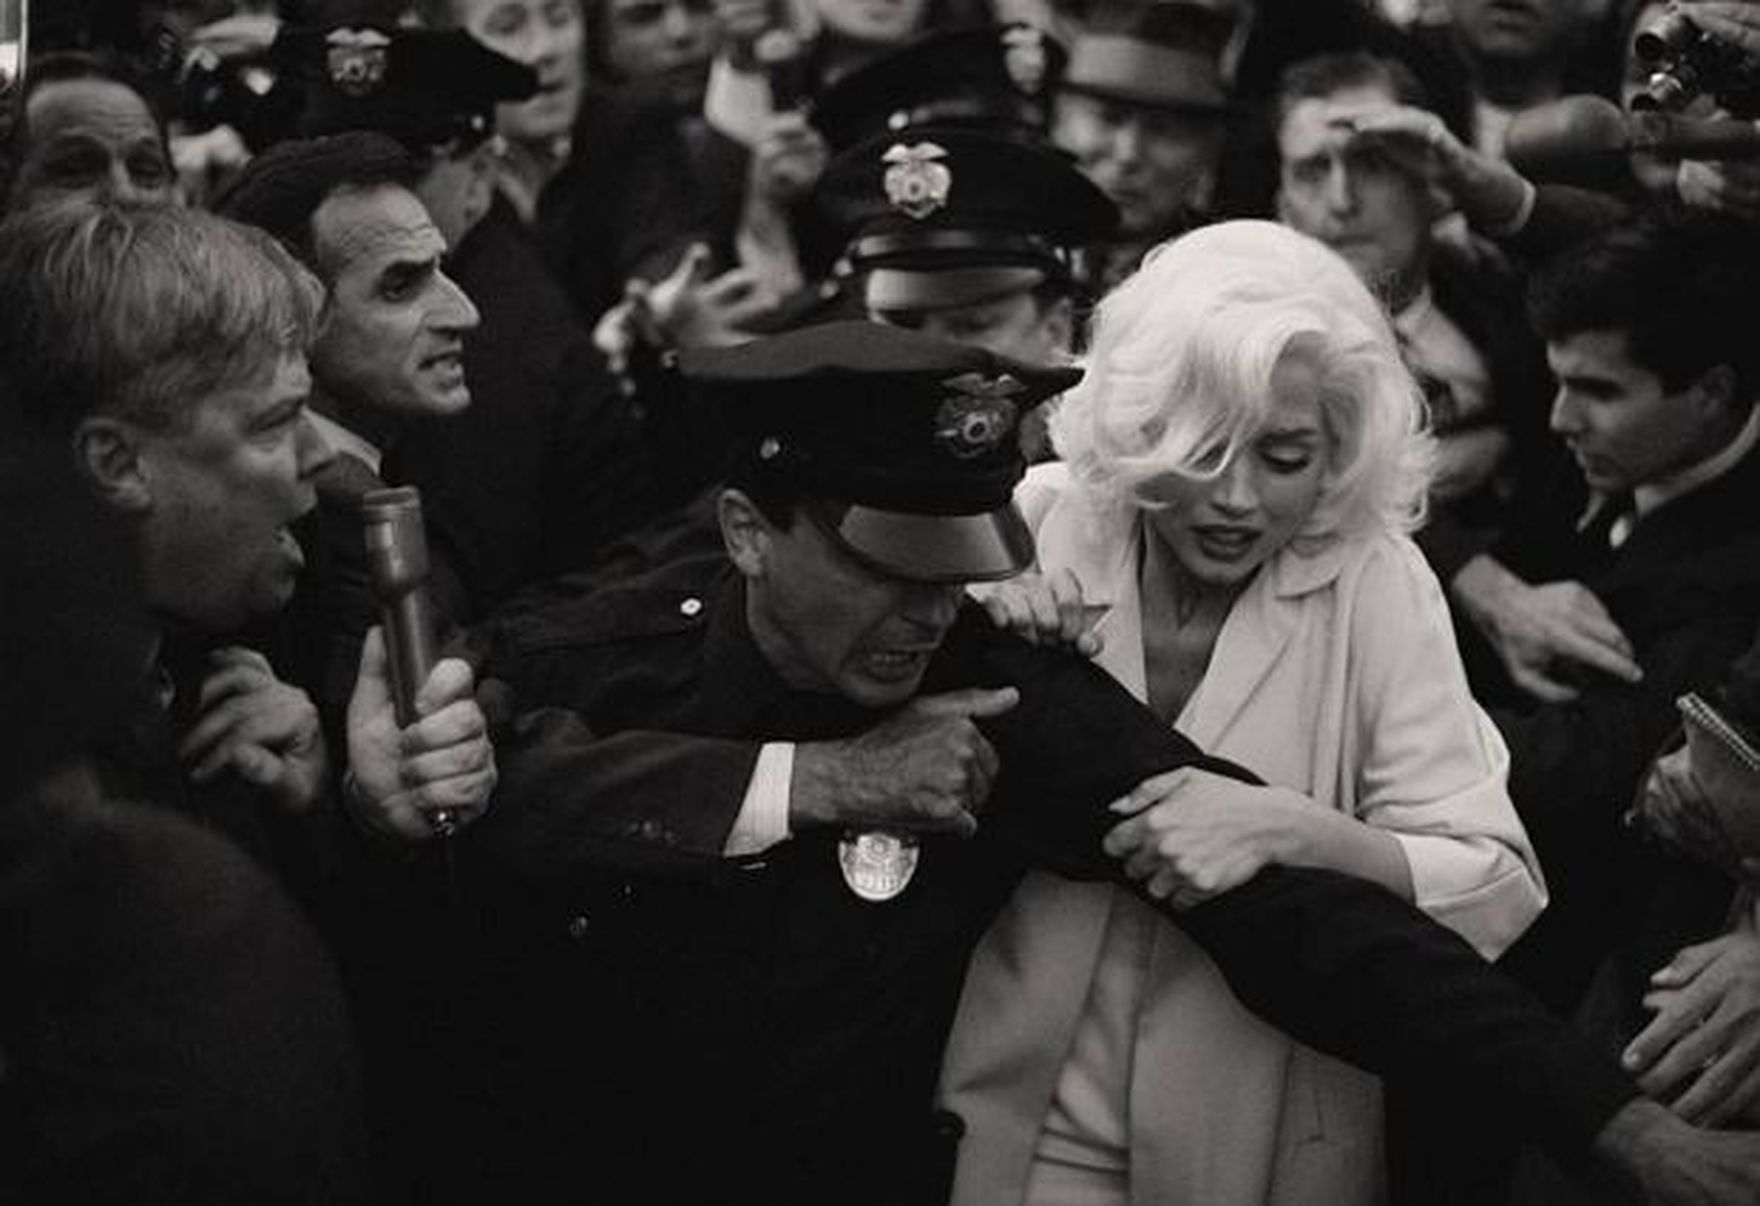 Odważny portret najbardziej znanej blondynki XX wieku. Marilyn Monroe czy Norma Jeane? "Blondynka" dzieli widzów